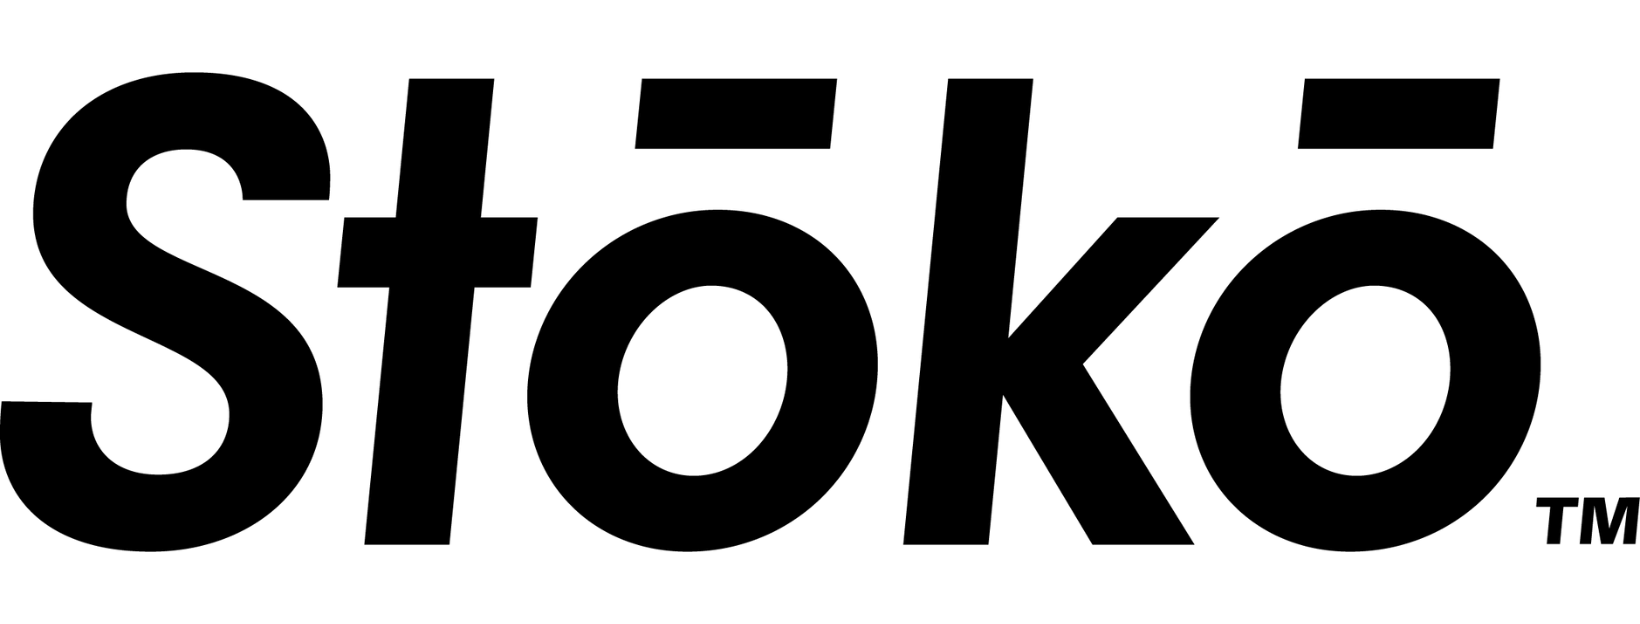 Stoko logo